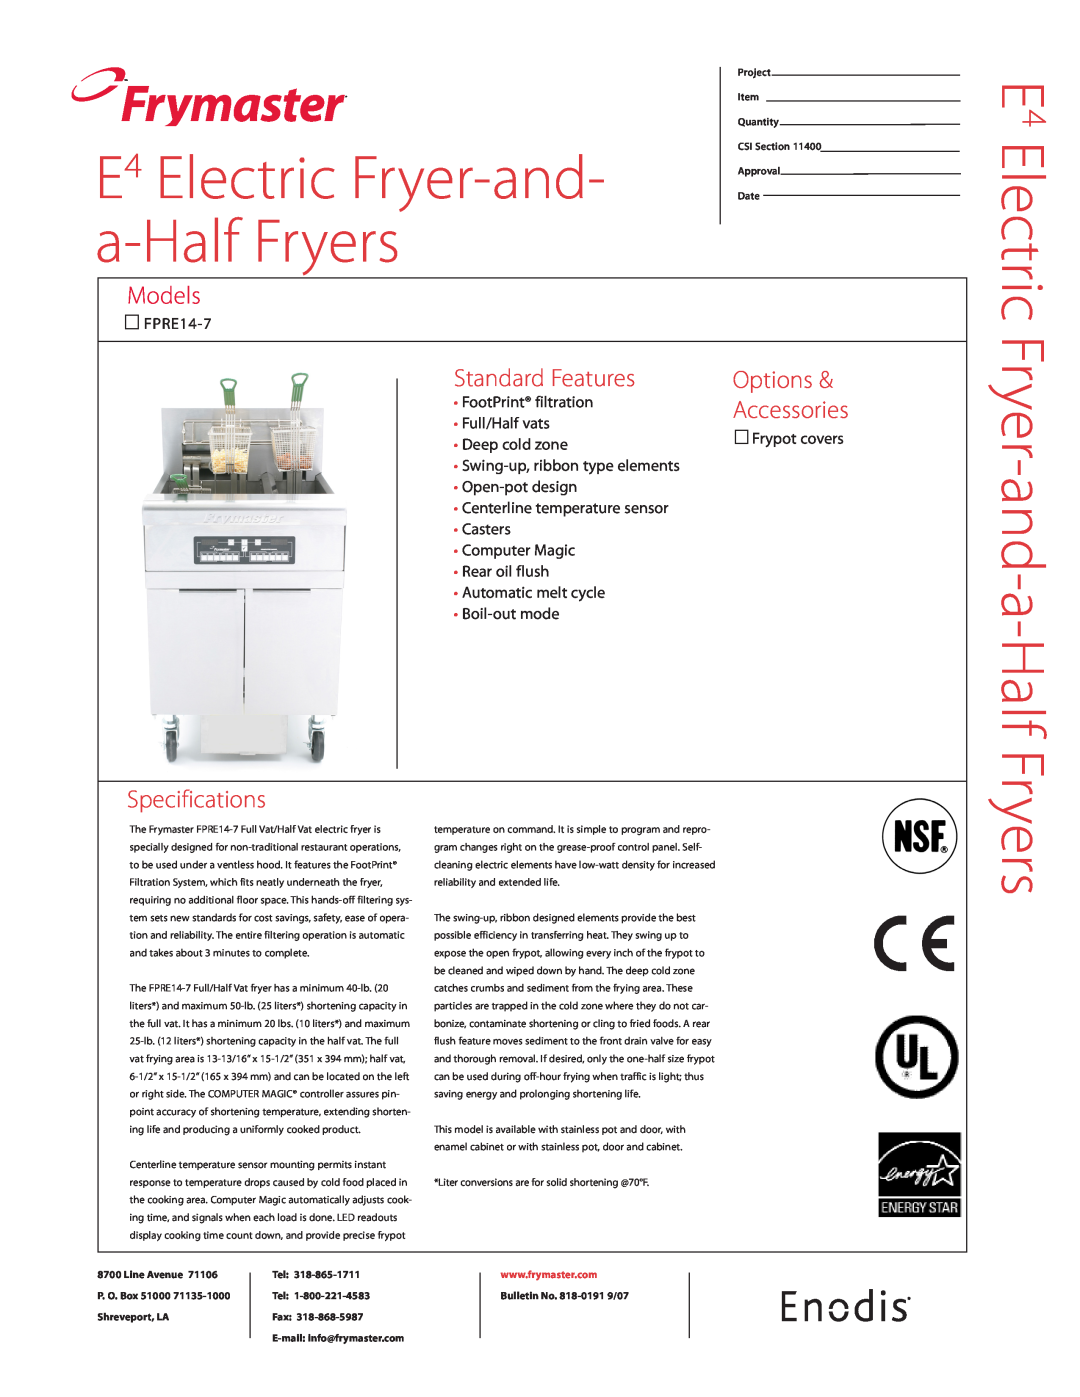 Frymaster FPRE14-7 specifications Frymaster, Fryer-and-a-Half Fryers, E4 Electric Fryer-and- a-Half Fryers, Models 